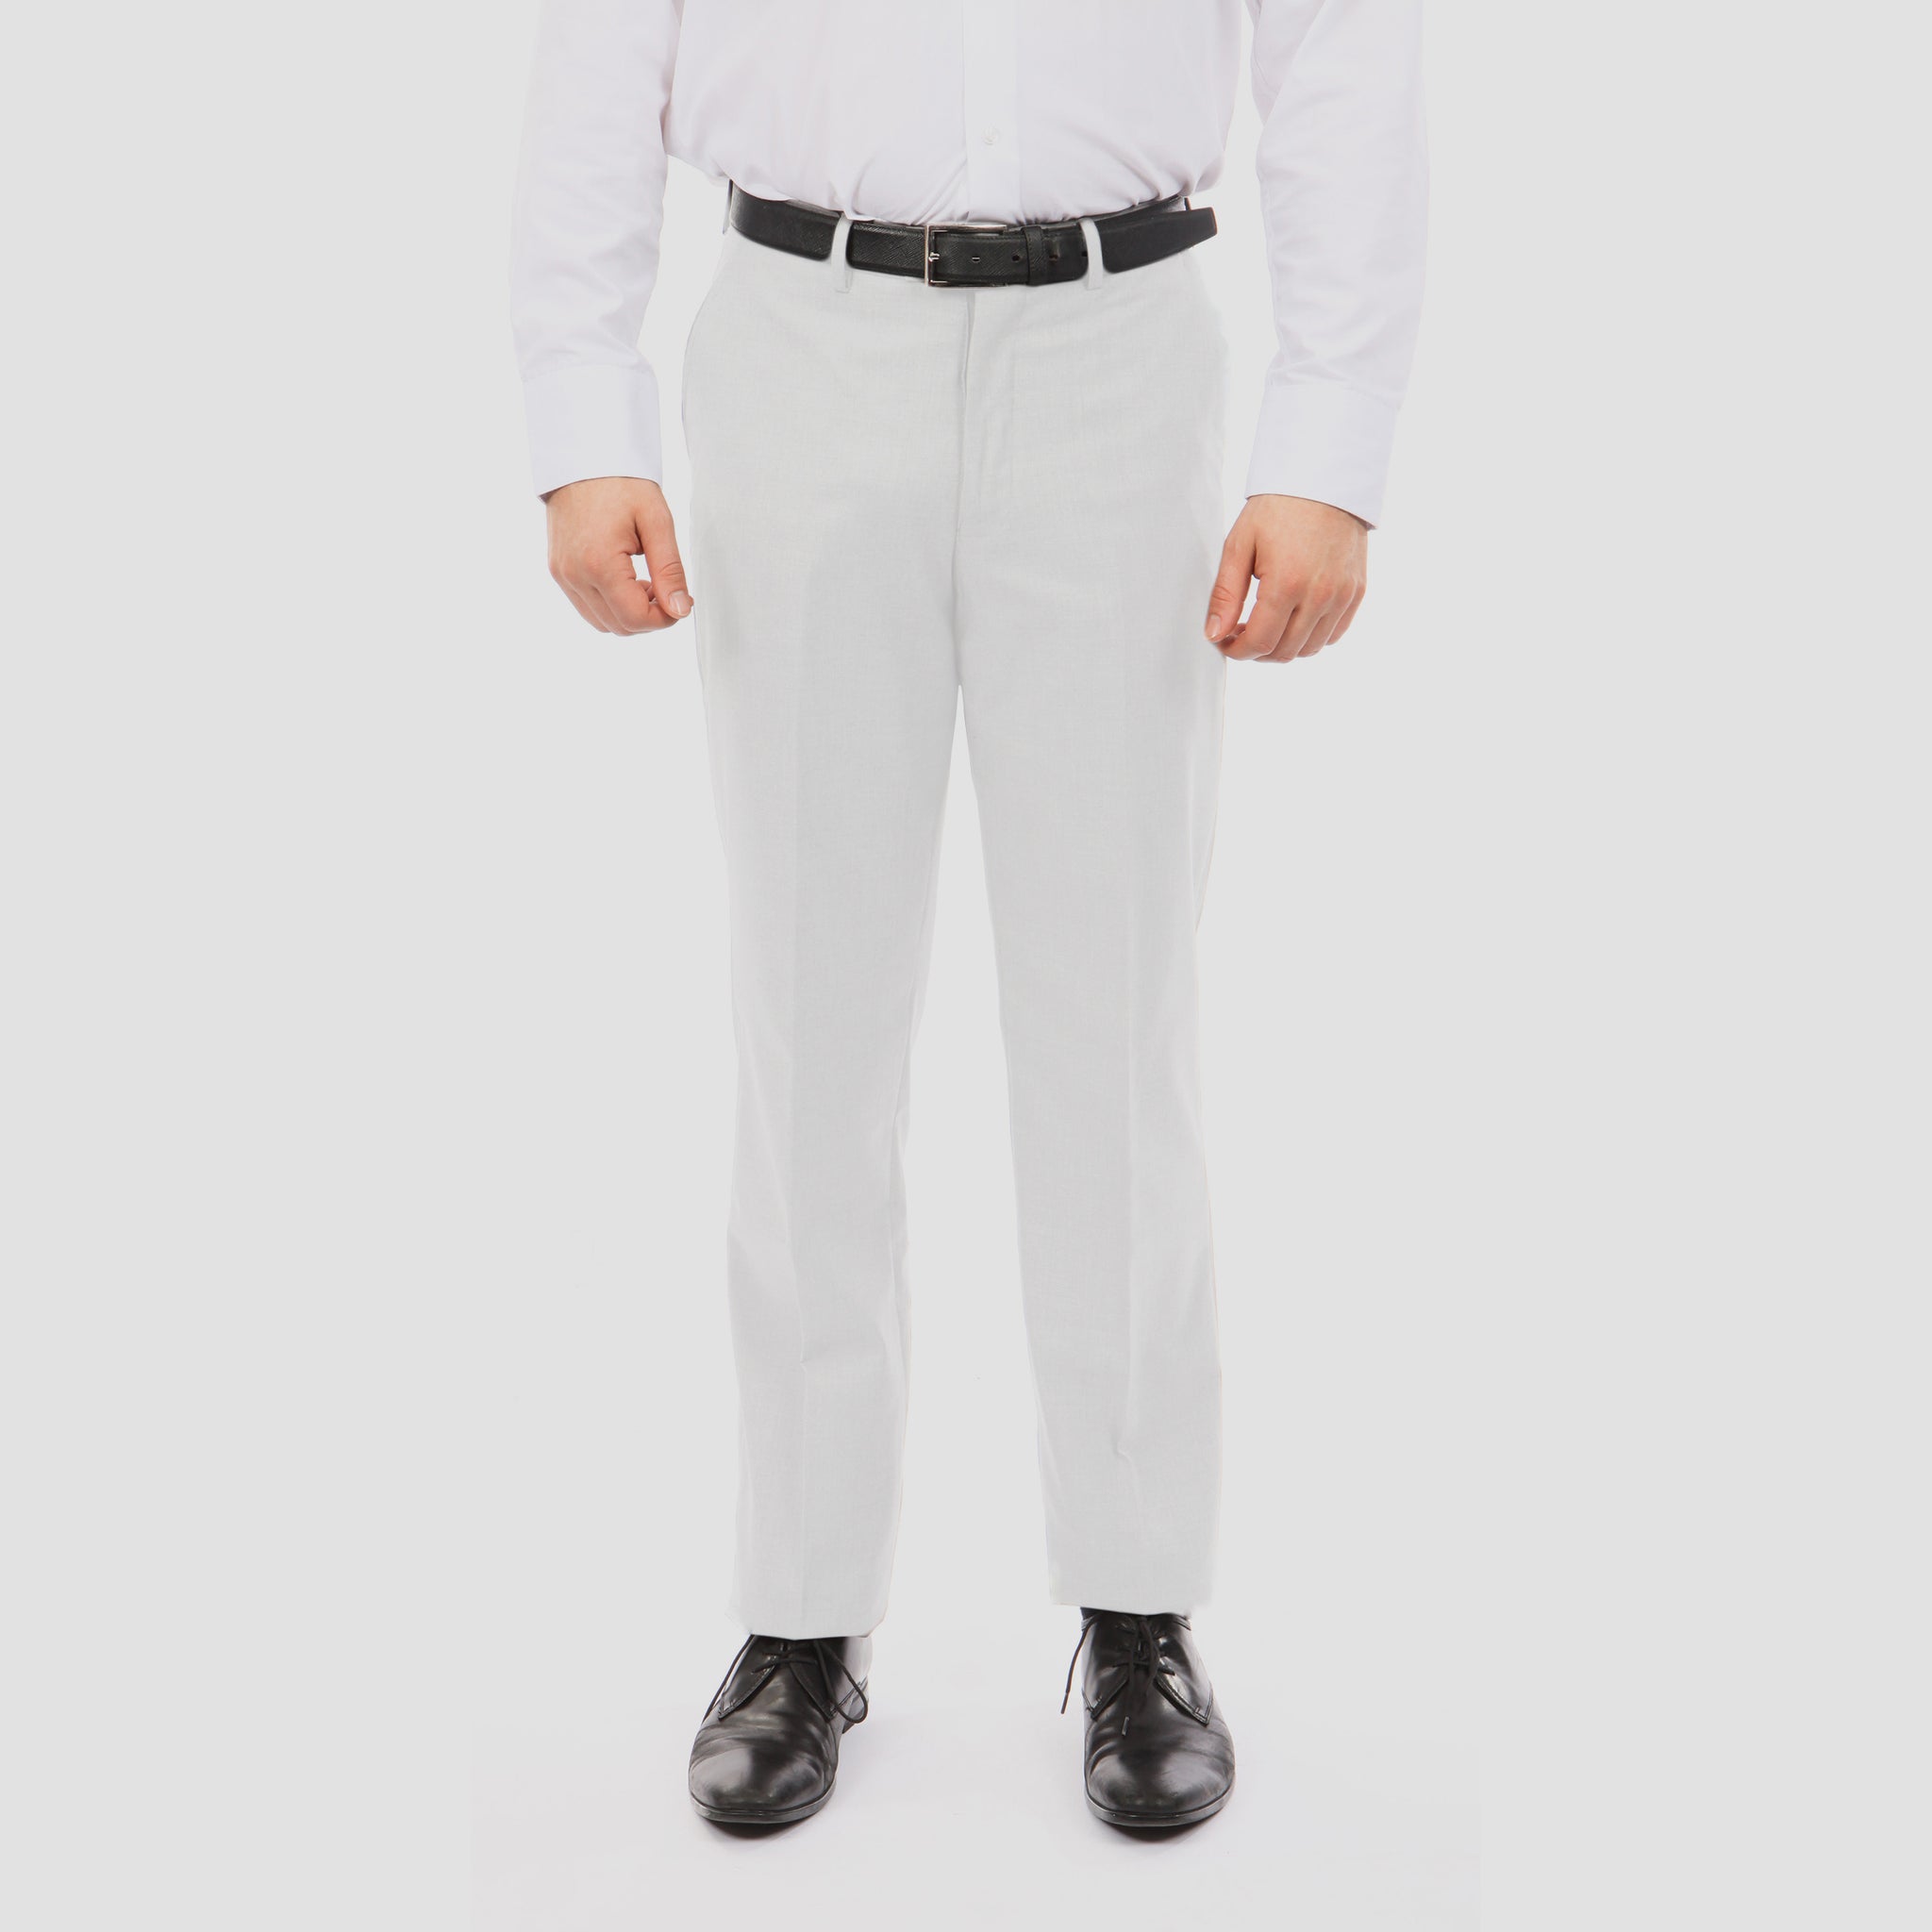 Tazio White Slim Fit Stretch Dress Pants For Men - Franky Fashion